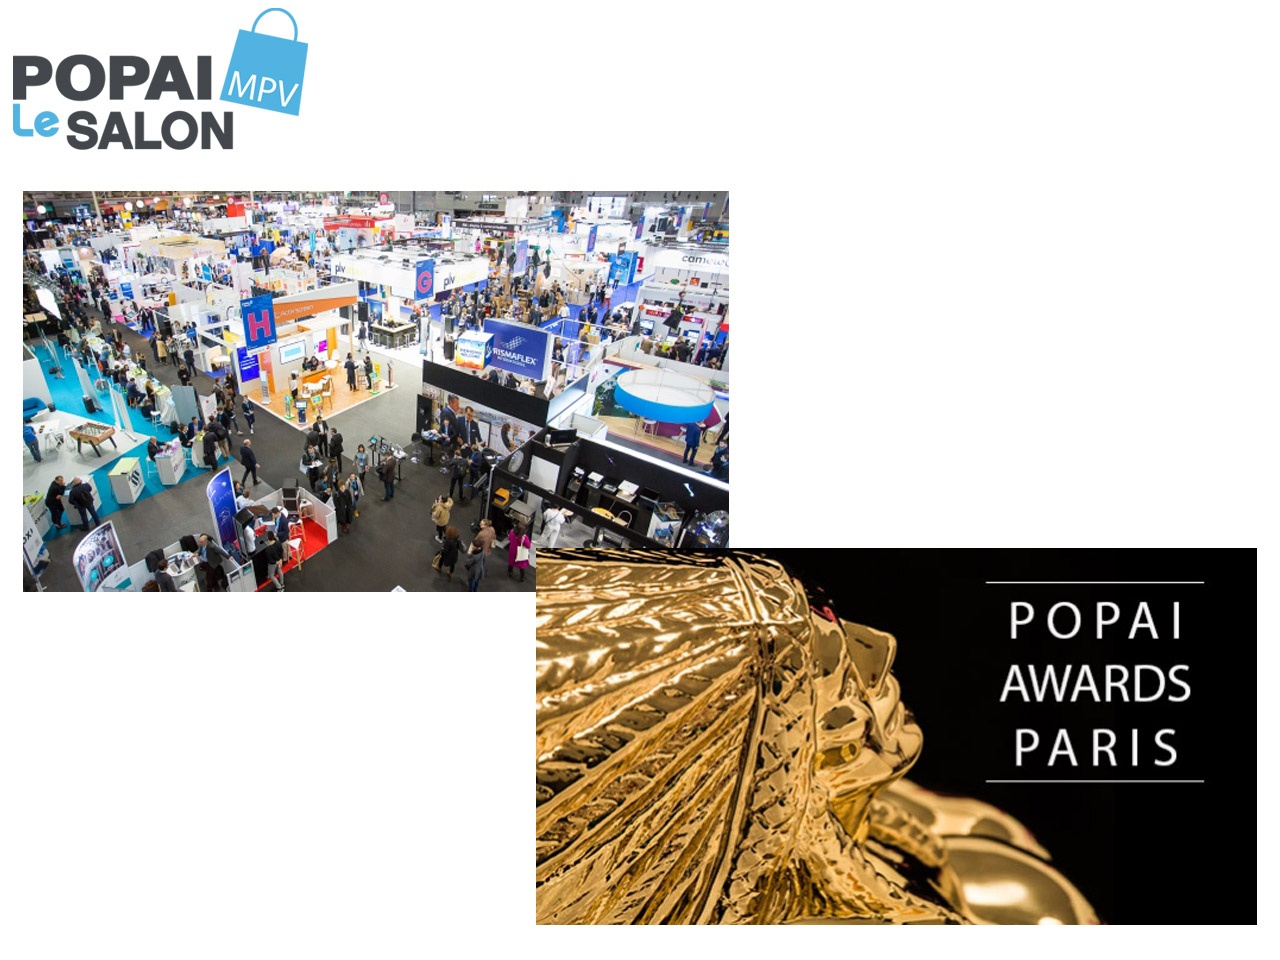 Le salon Marketing Point de Vente (MPV) et le concours des POPAI Awards Paris auront finalement lieu du 13 au 15 avril 2021